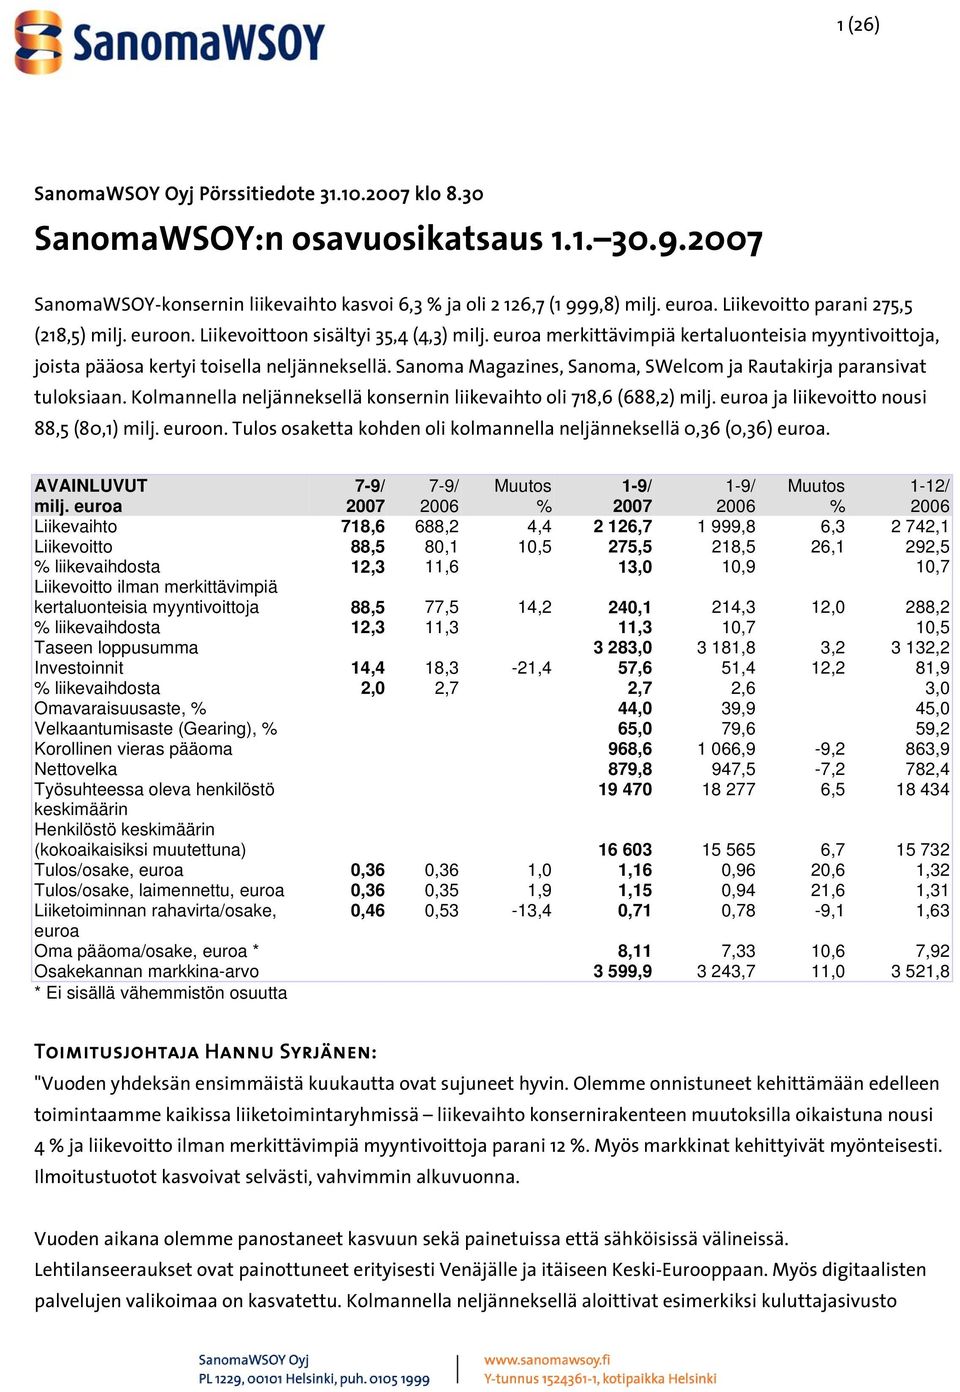 Sanoma Magazines, Sanoma, SWelcom ja Rautakirja paransivat tuloksiaan. Kolmannella neljänneksellä konsernin liikevaihto oli 718,6 (688,2) milj. euroa ja liikevoitto nousi 88,5 (80,1) milj. euroon.